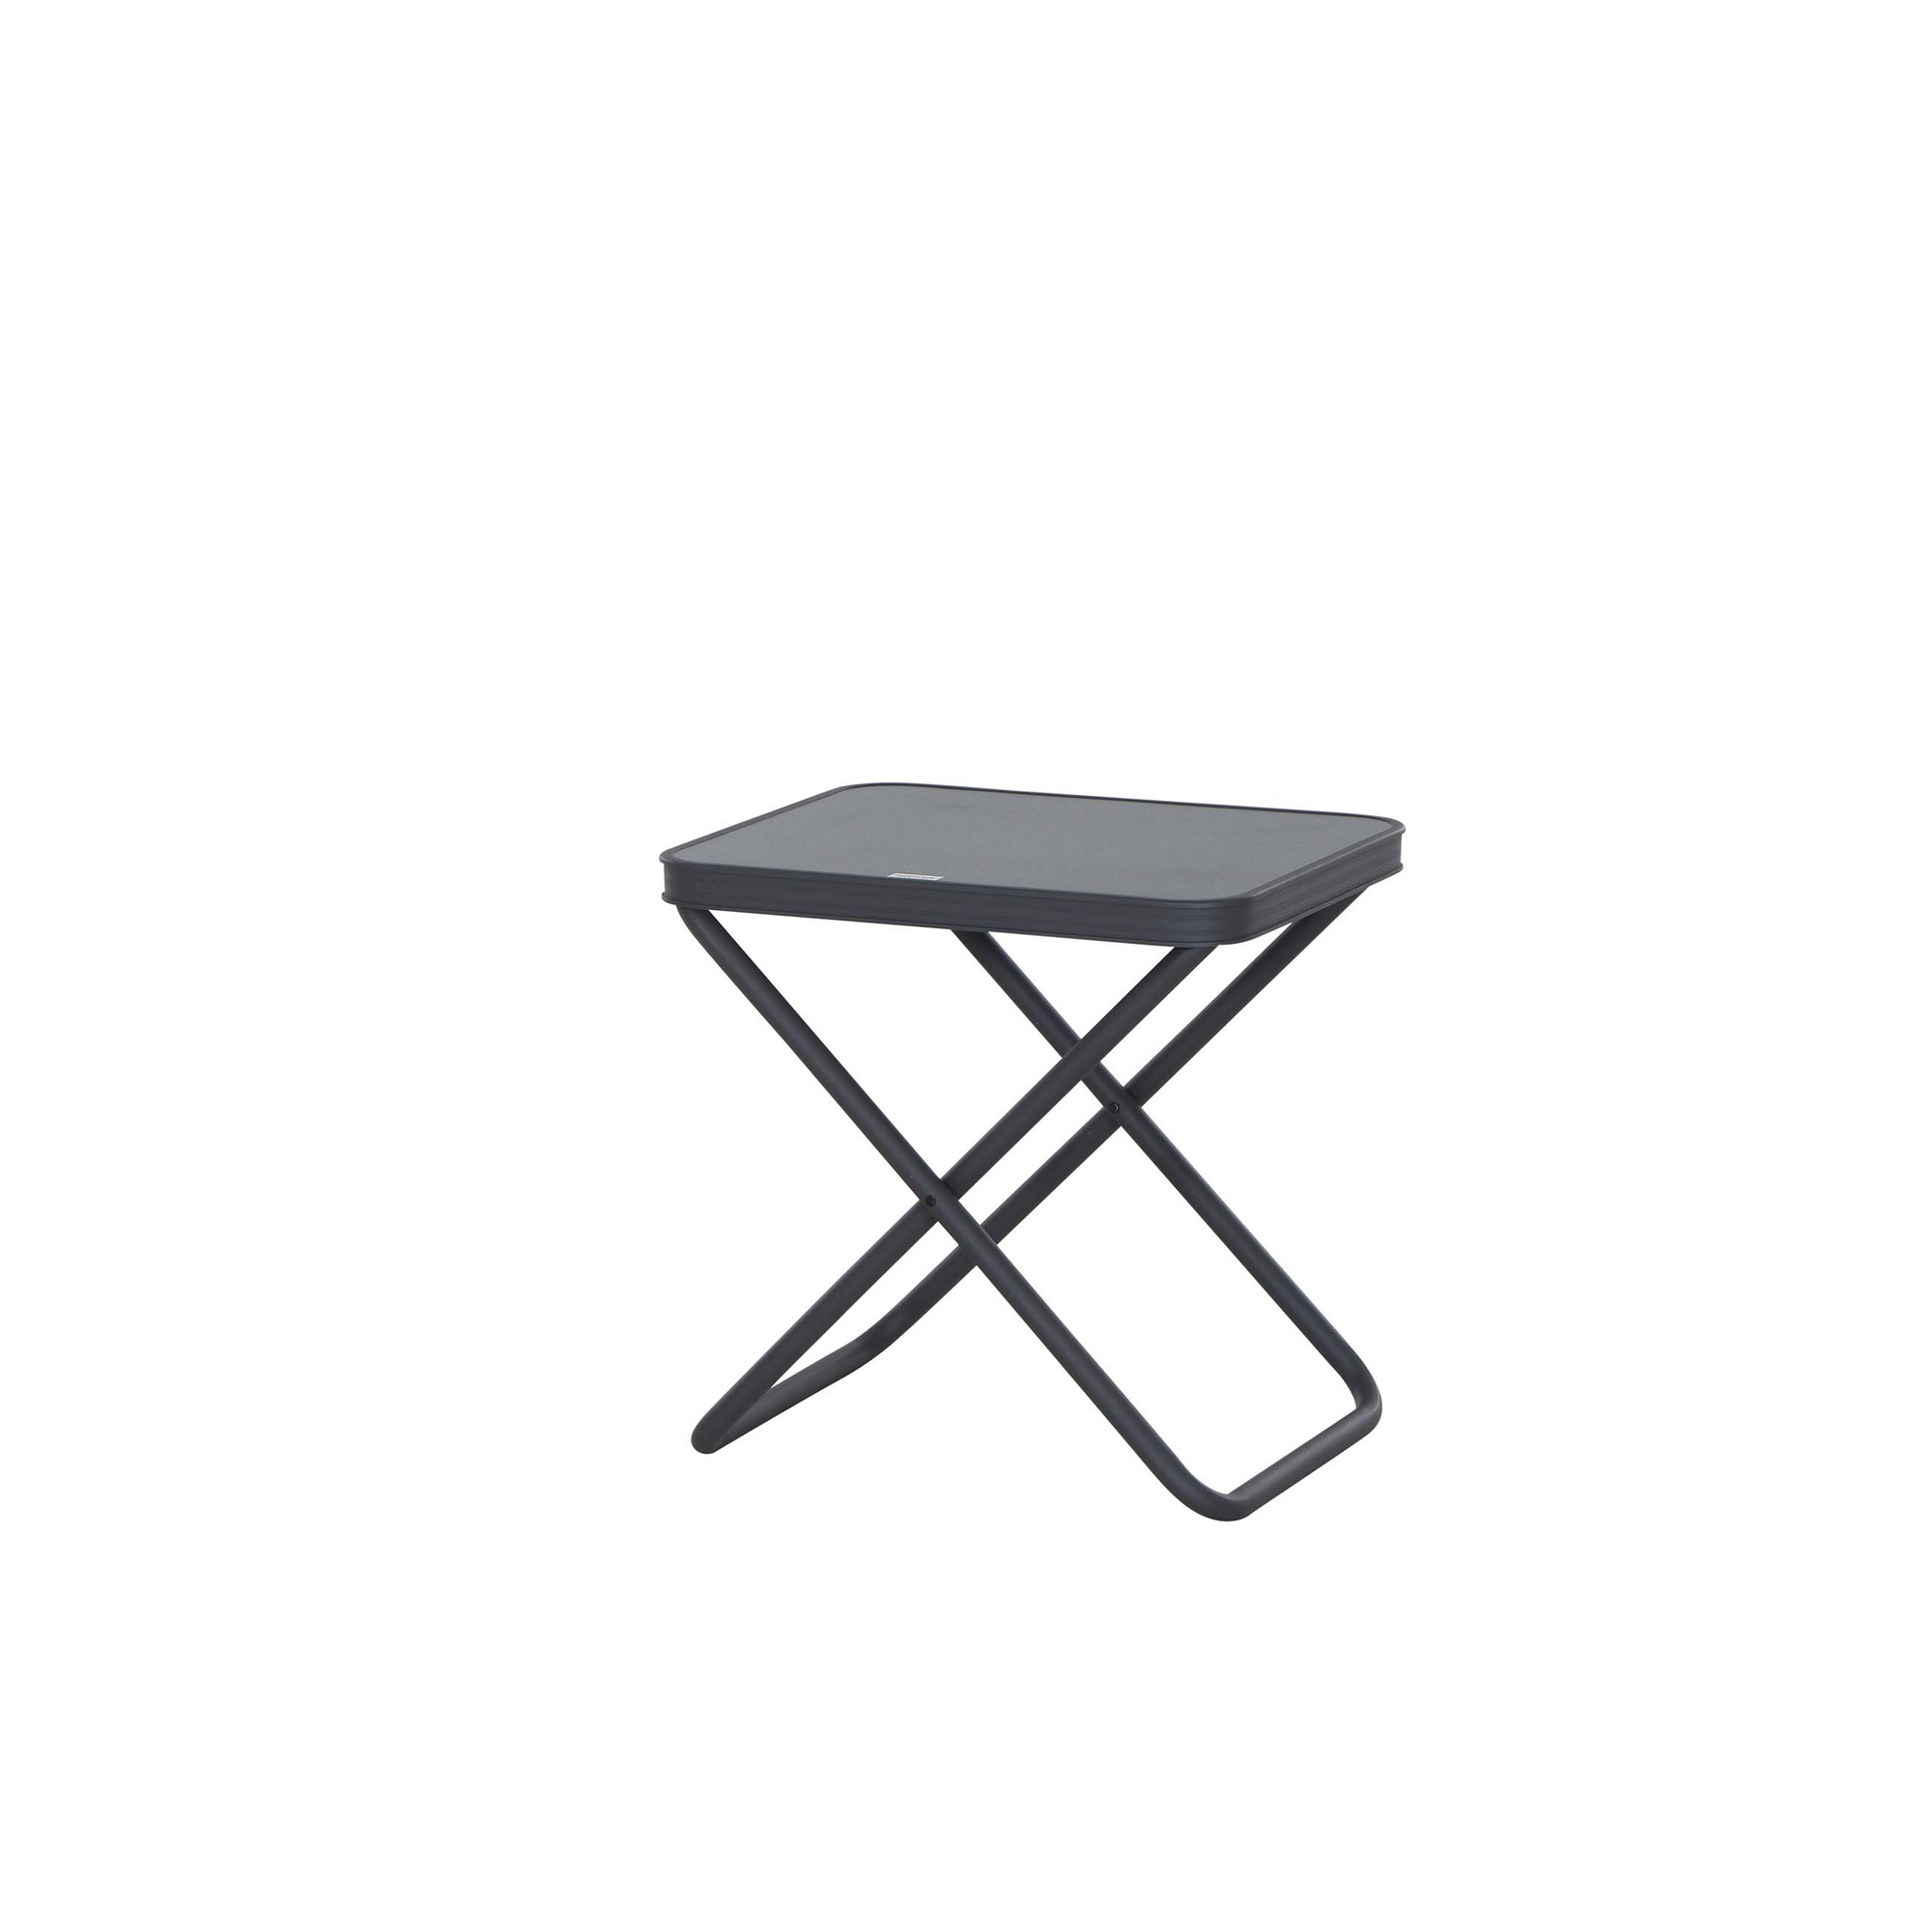 Tischplatte für Camping-Hocker grau 48,5 x 41 x 3,5 cm + product picture